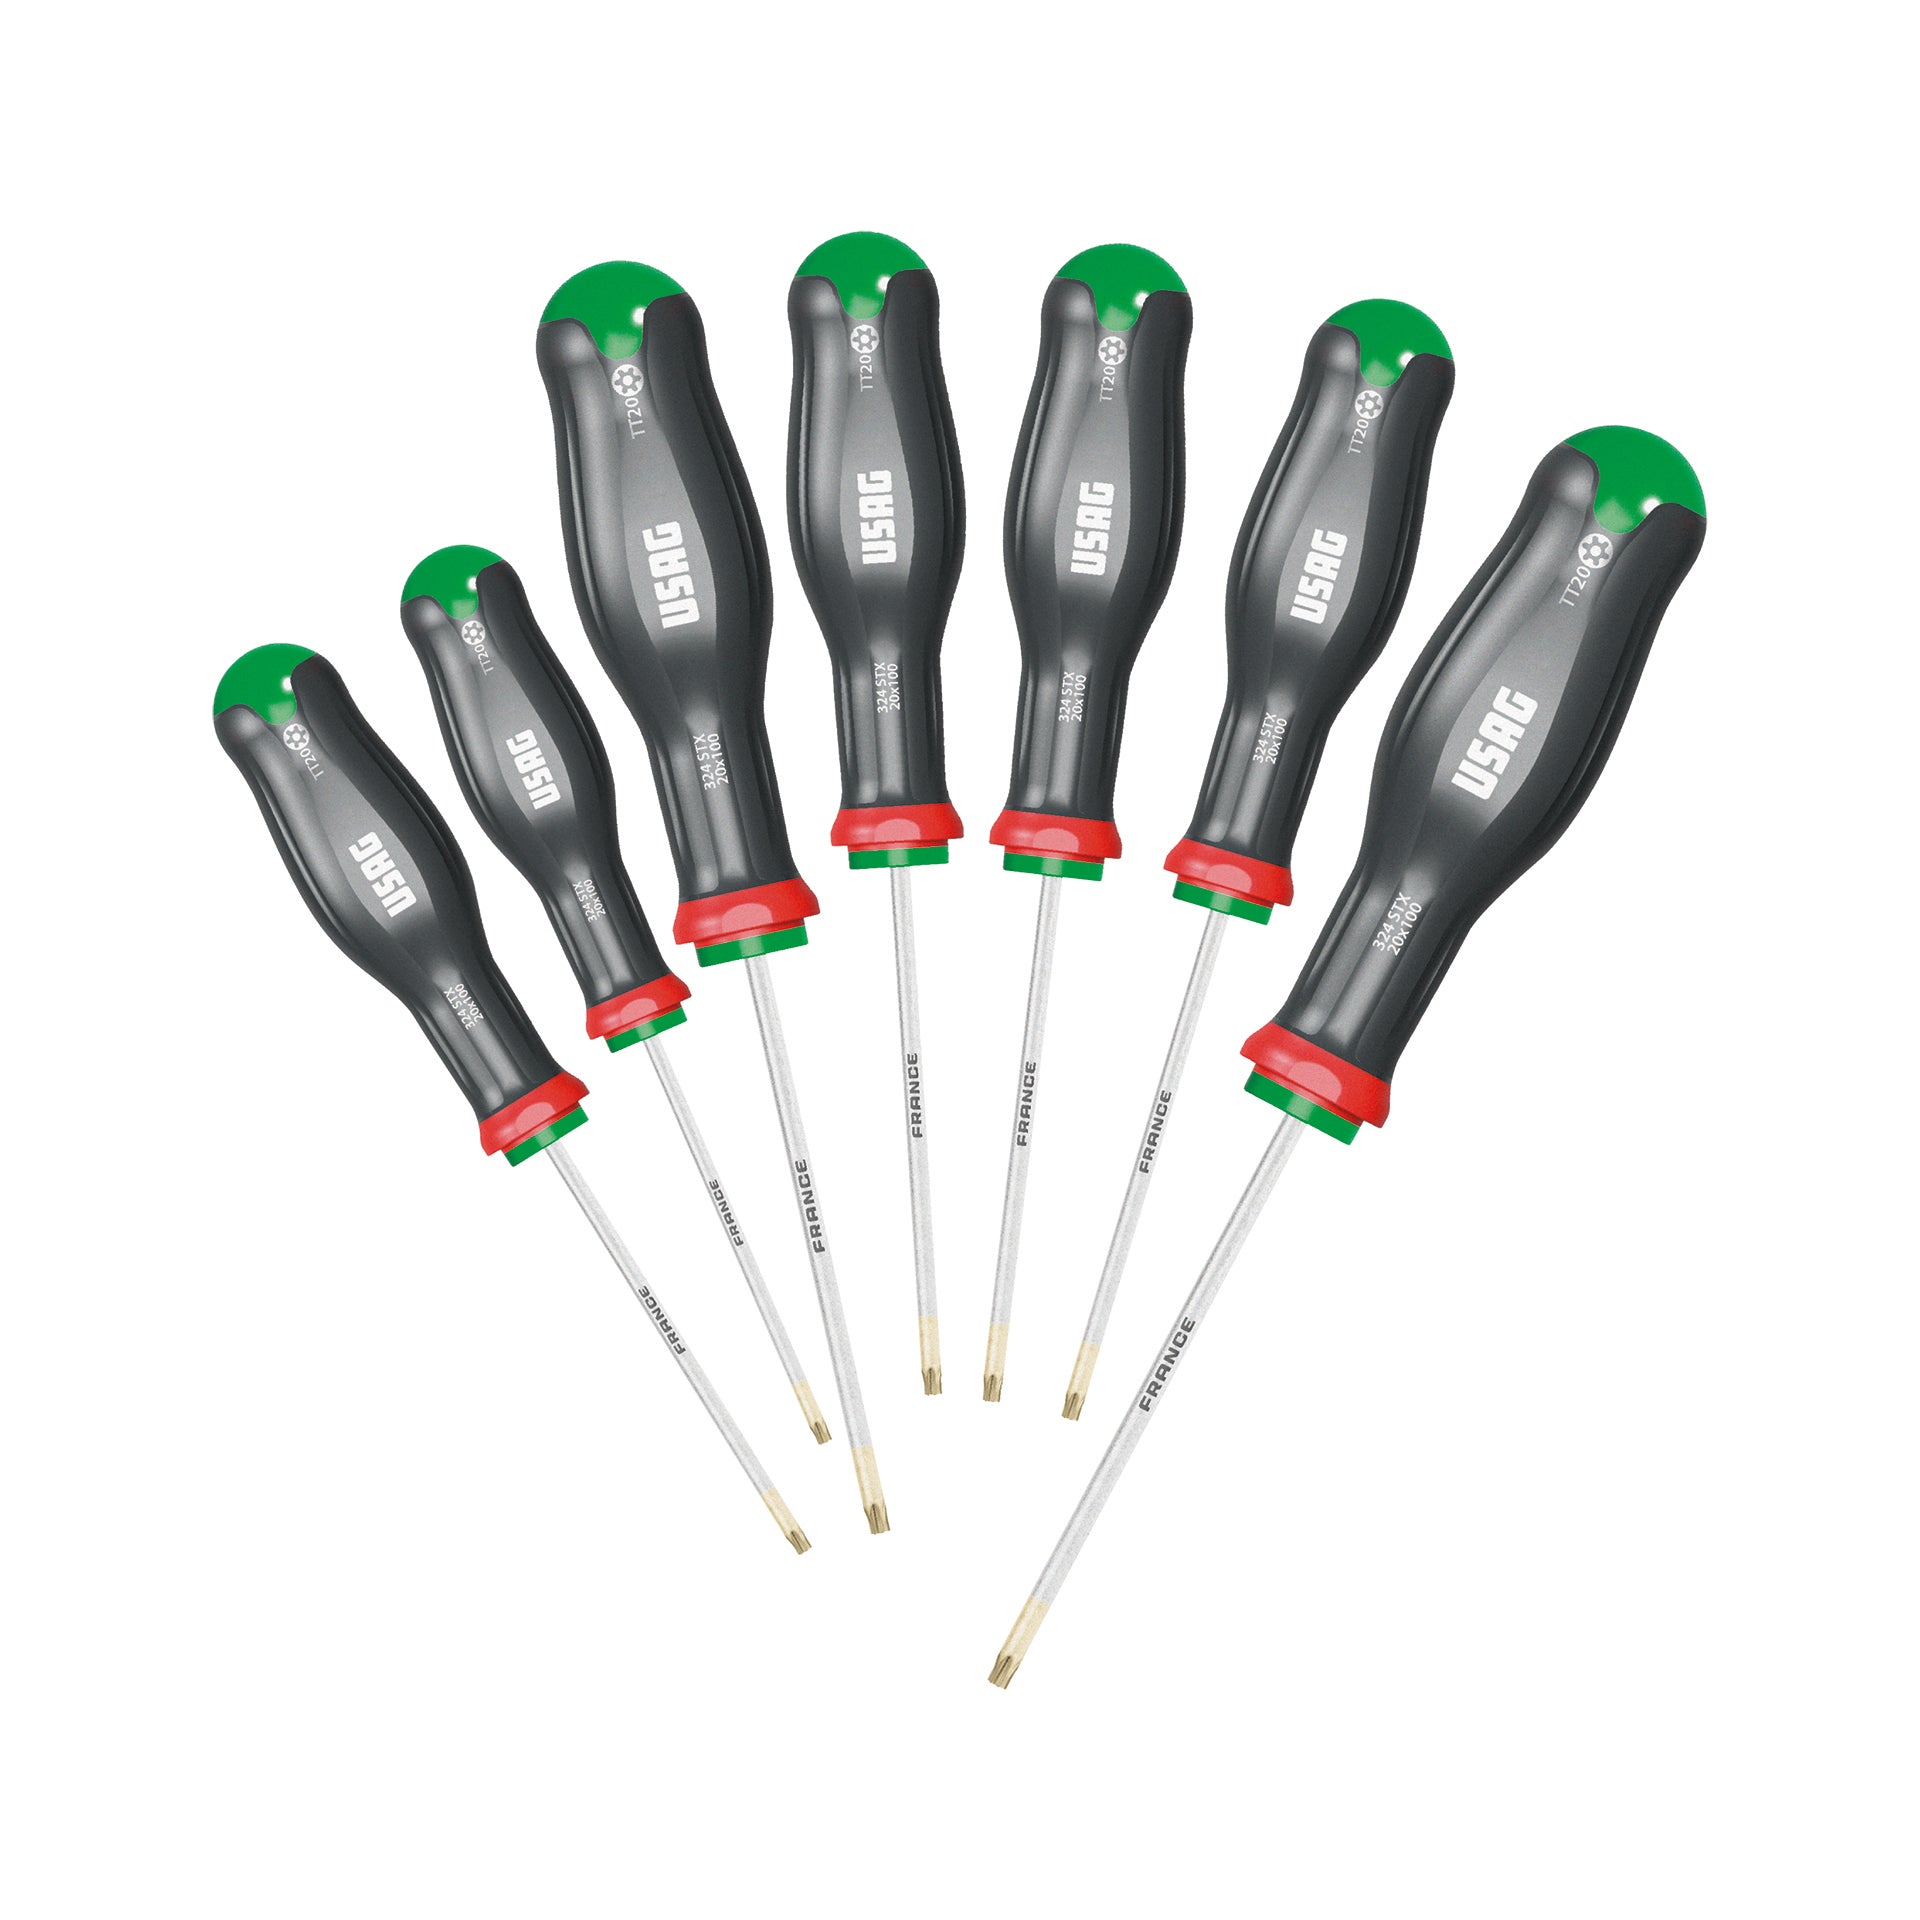 Set of 7 screwdrivers for Torx Tamper Resistant screws 810gr - Usag 324 STX/S7